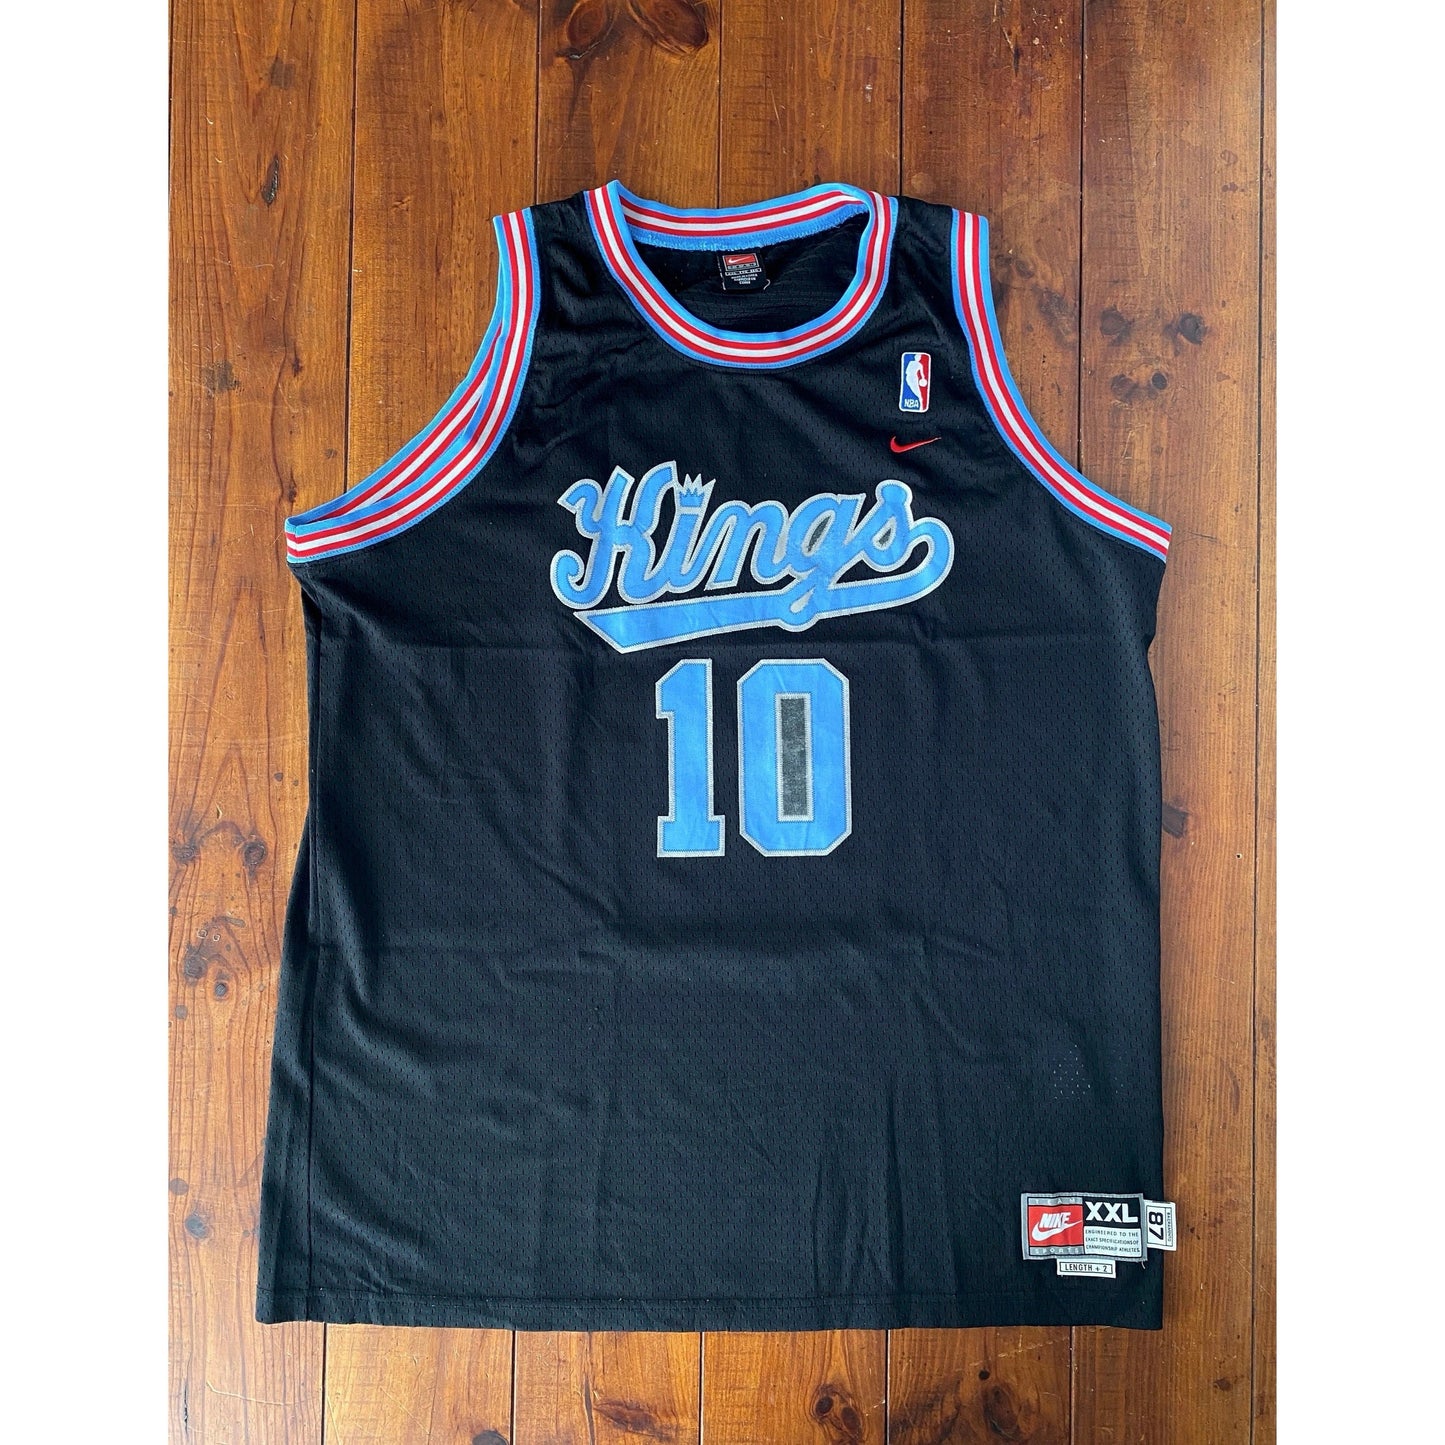 Size XXL. Vintage Sacramento Kings NBA Mike Bibby 10 Swingman jersey By nike